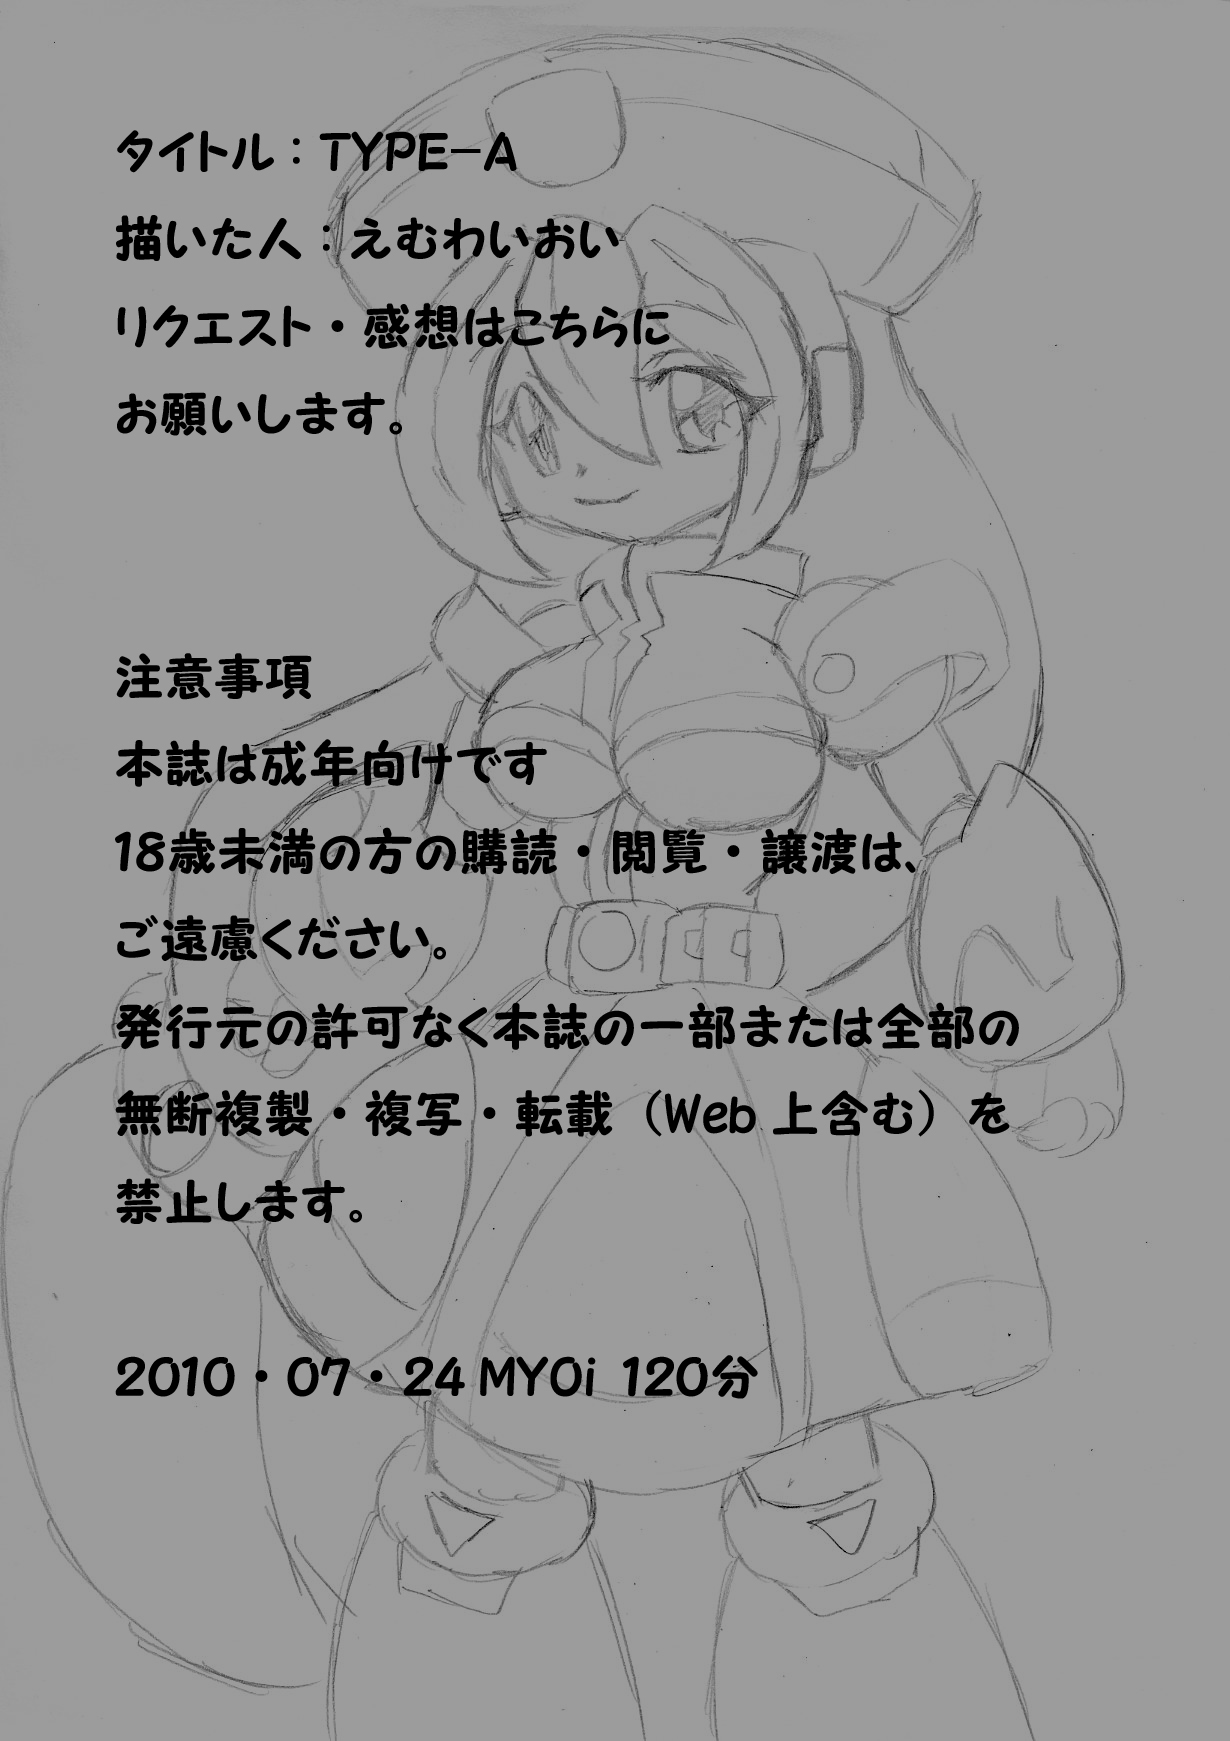 [Myon+1 (MYOi)] Type-A (Rockman X4​ [Mega Man X4]) [MYON+1 (MYOi)] TYPE-A (ロックマンX4)